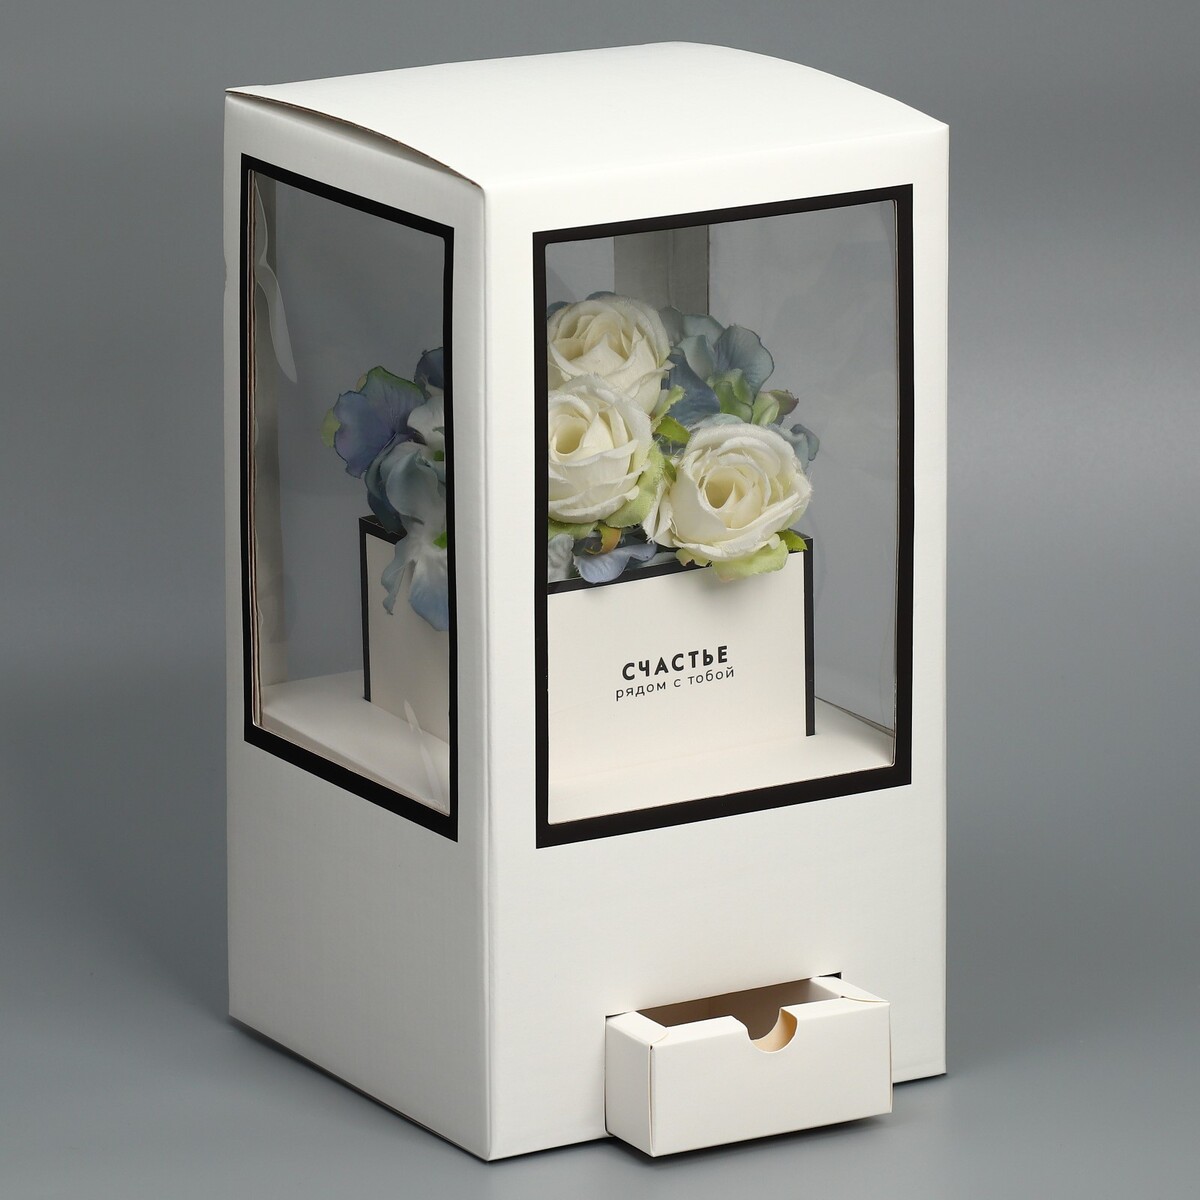 Коробка подарочная для цветов с вазой из мгк складная, упаковка, коробка для ов с вазой и pvc окнами складная красный 23 х 30 х 23 см